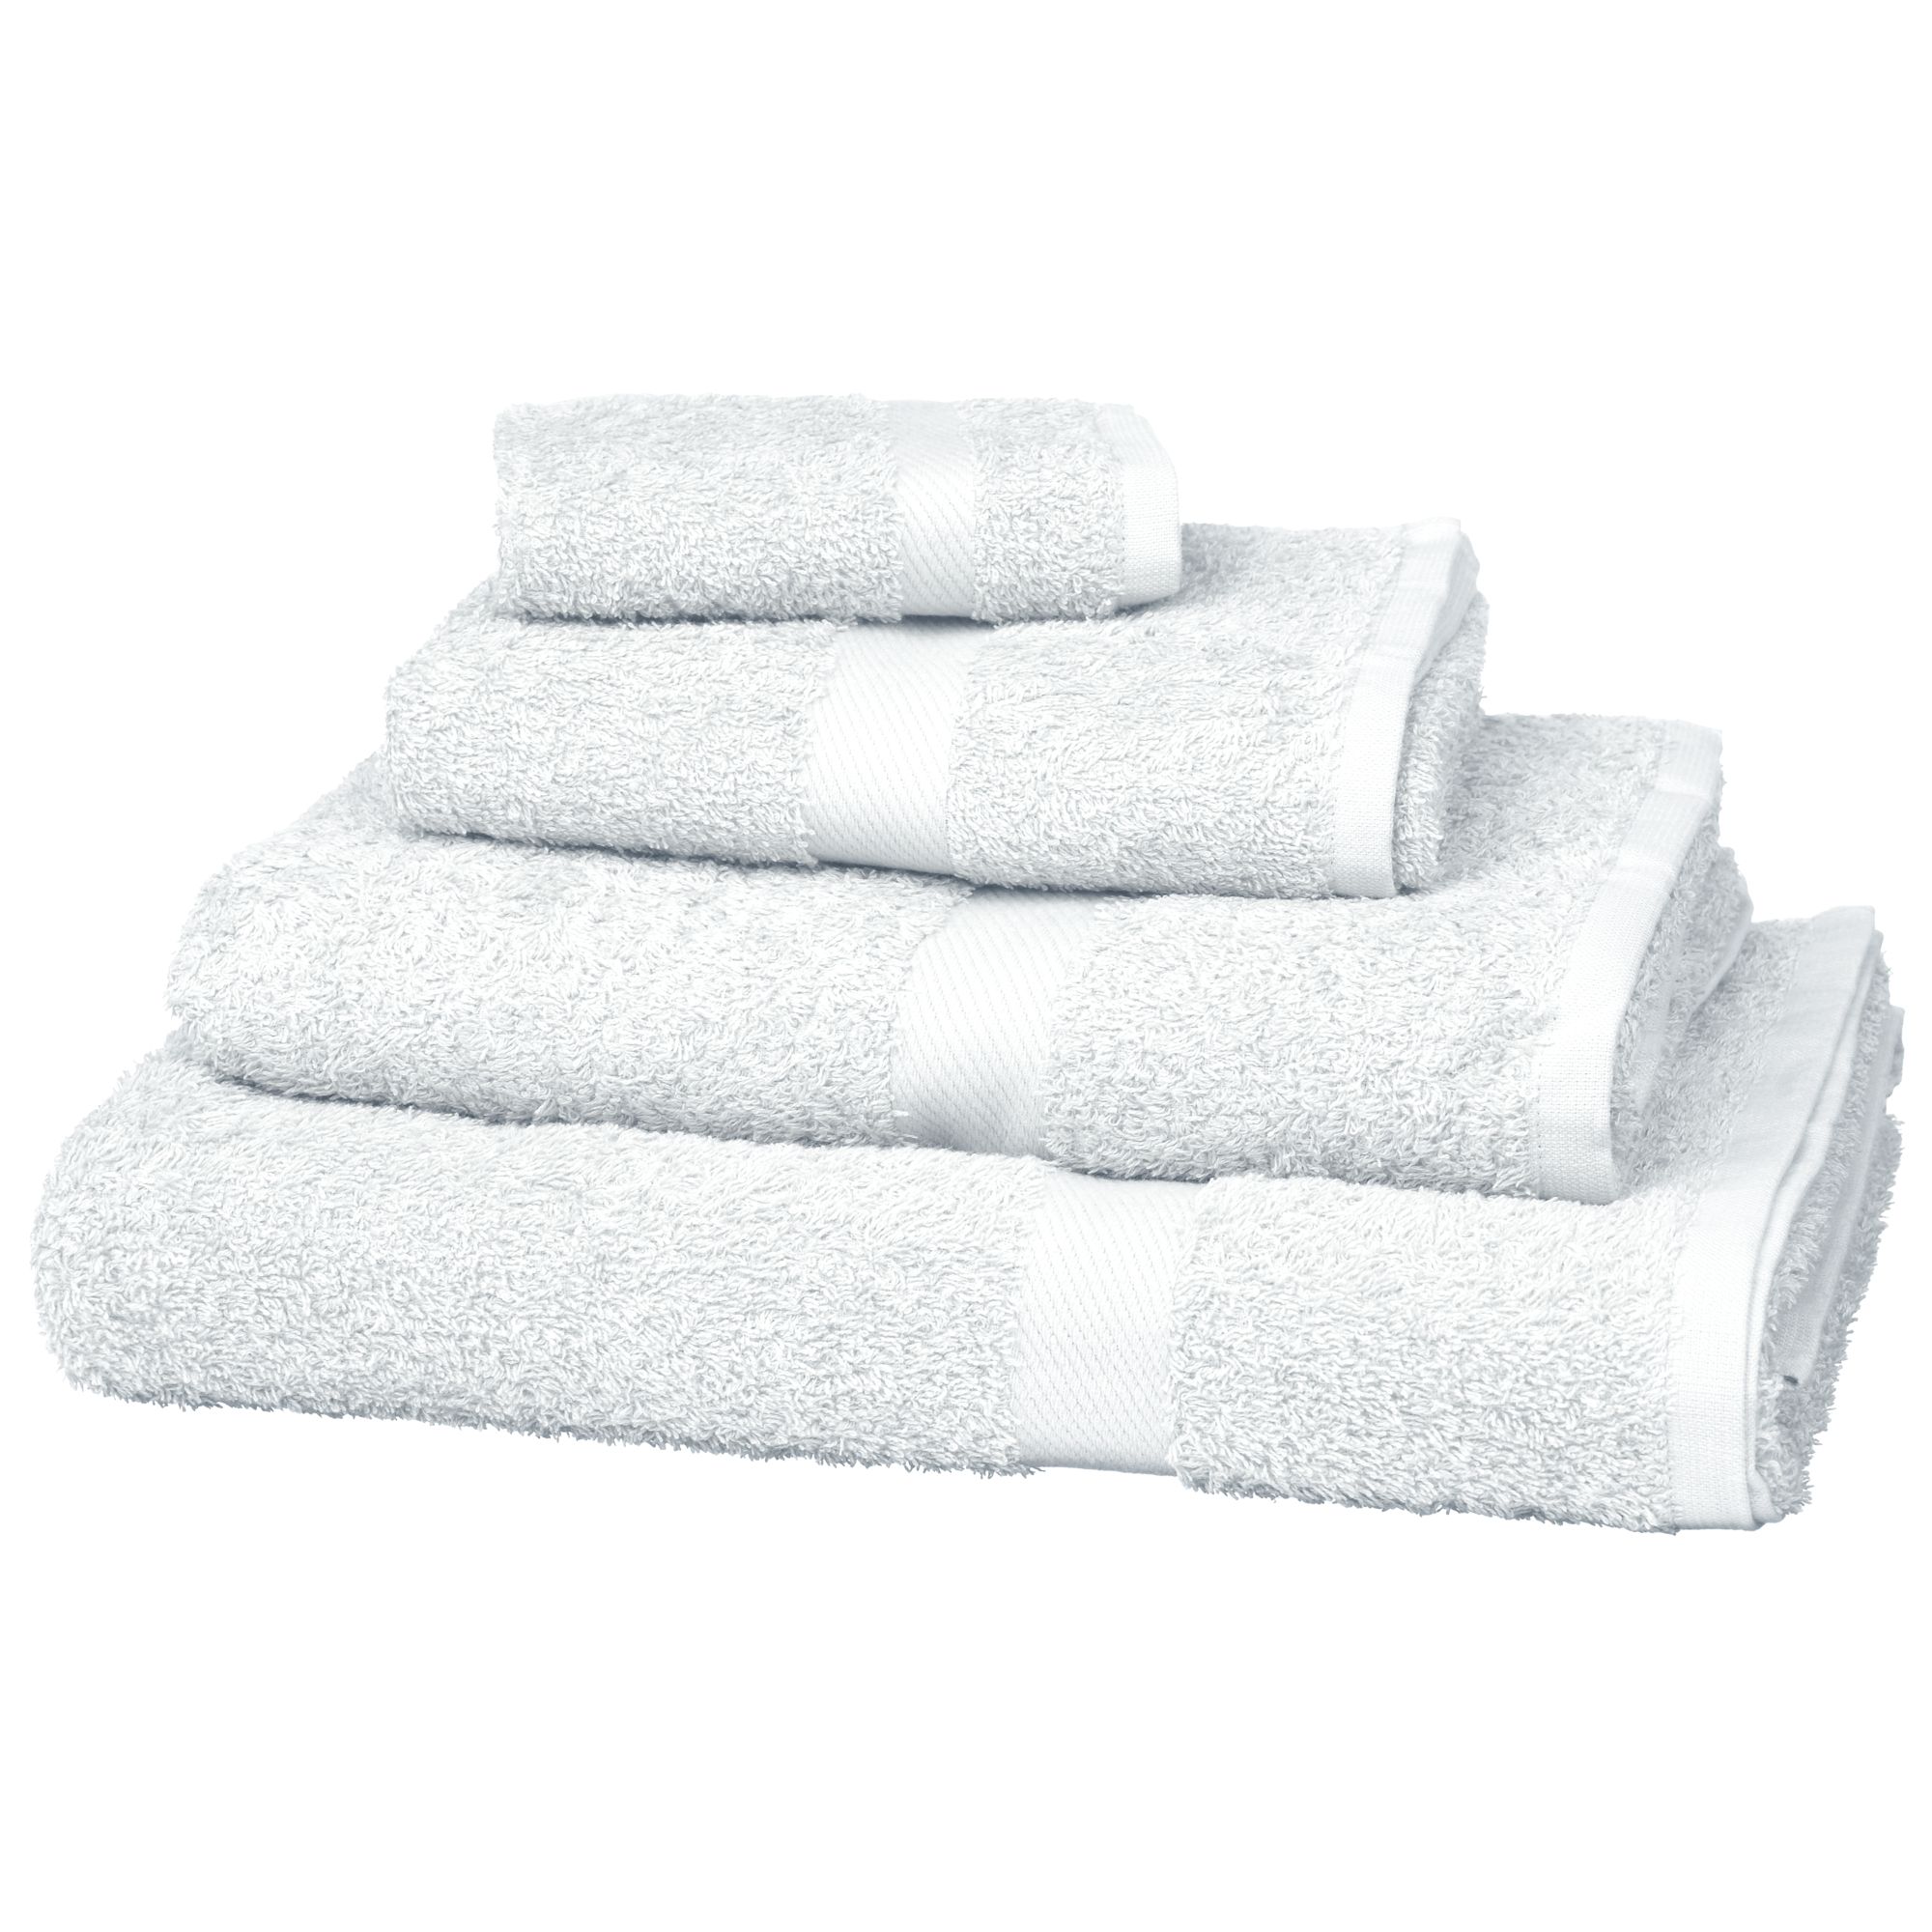 John Lewis Value Cotton Towels, White 118302